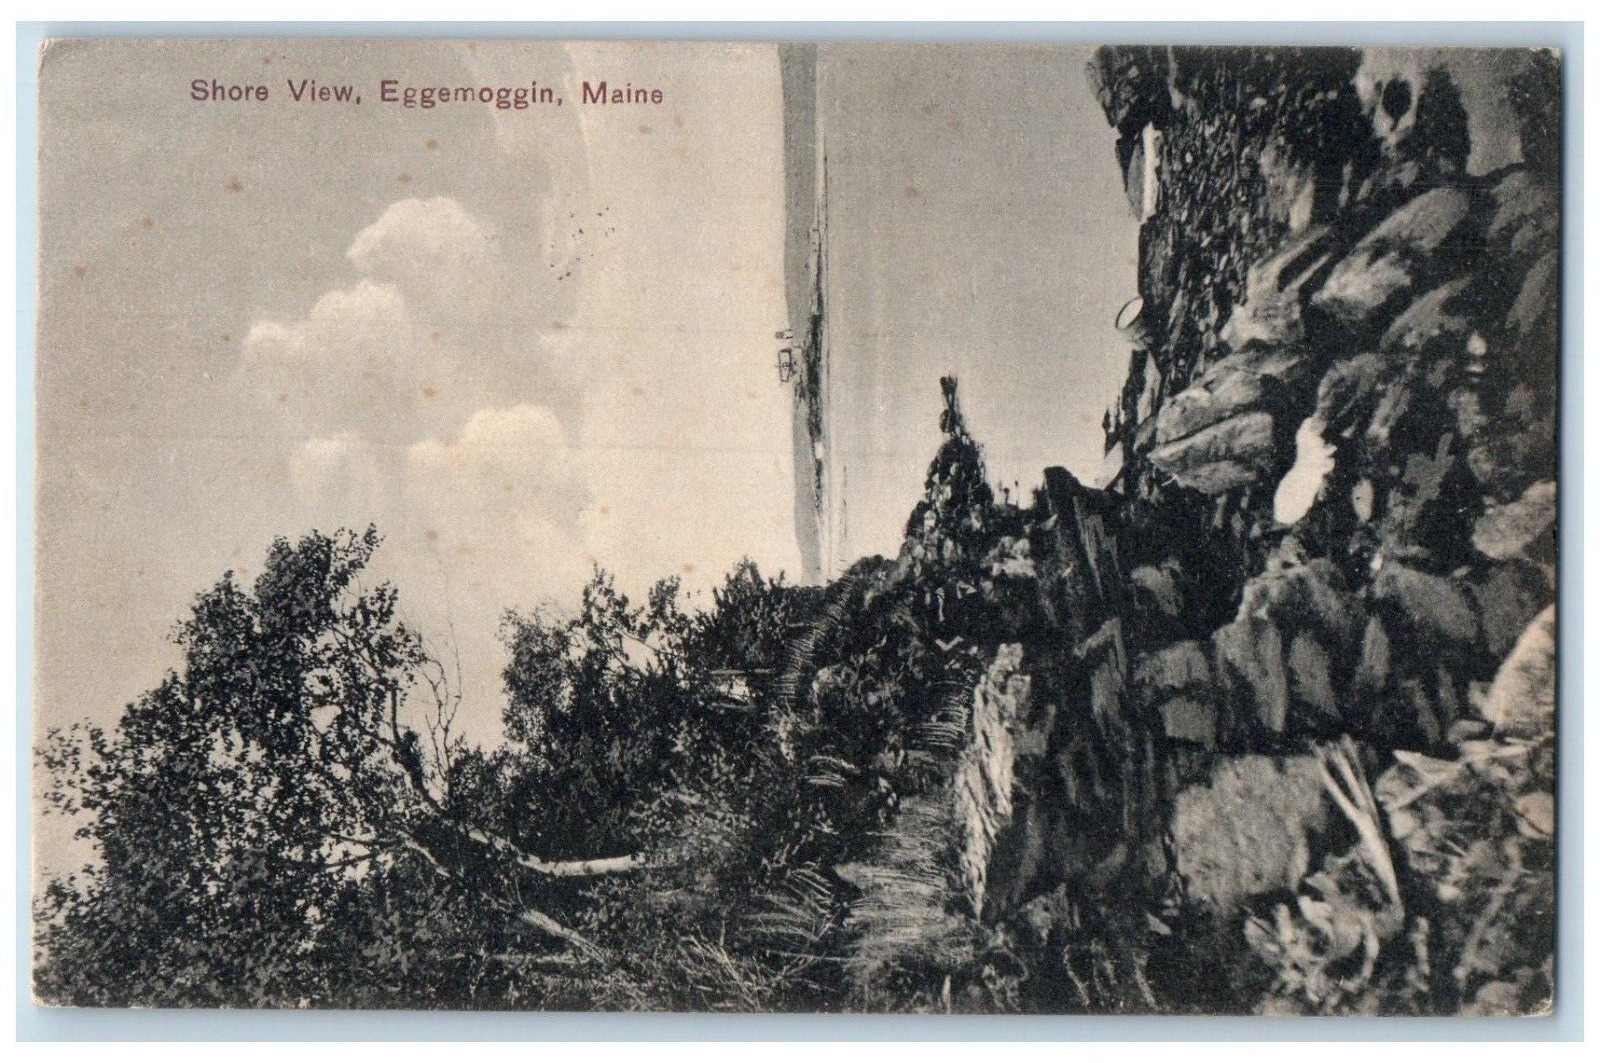 1908 Shore View Rock River Trees Eggemoggin Maine Vintage Antique PCK Postcard